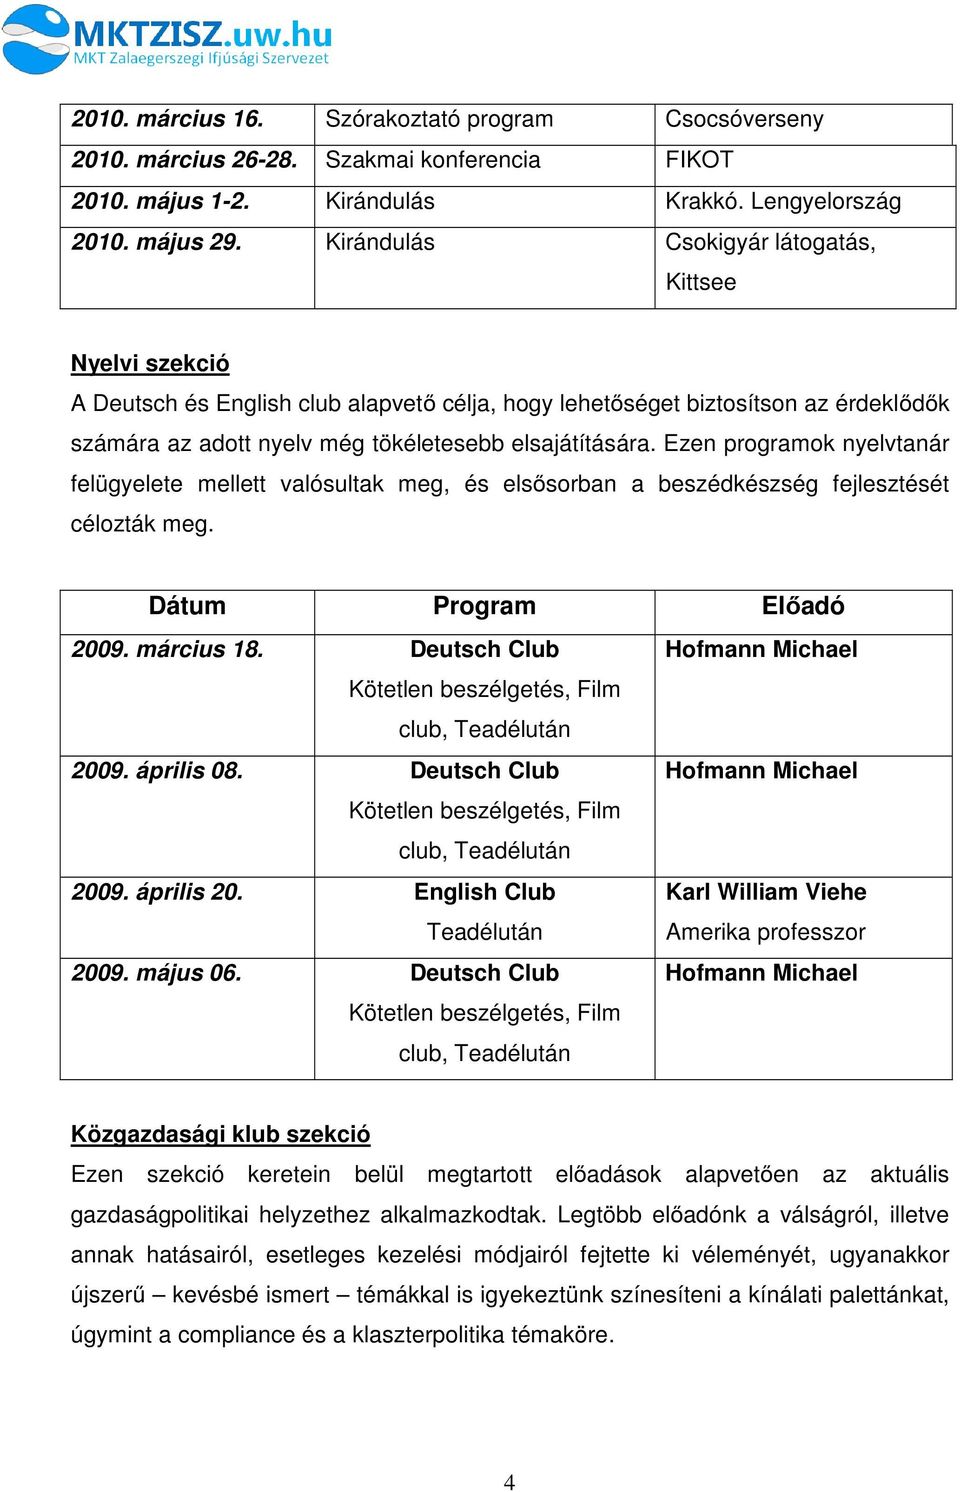 Ezen programok nyelvtanár felügyelete mellett valósultak meg, és elsősorban a beszédkészség fejlesztését célozták meg. Dátum Program Előadó 2009. március 18.